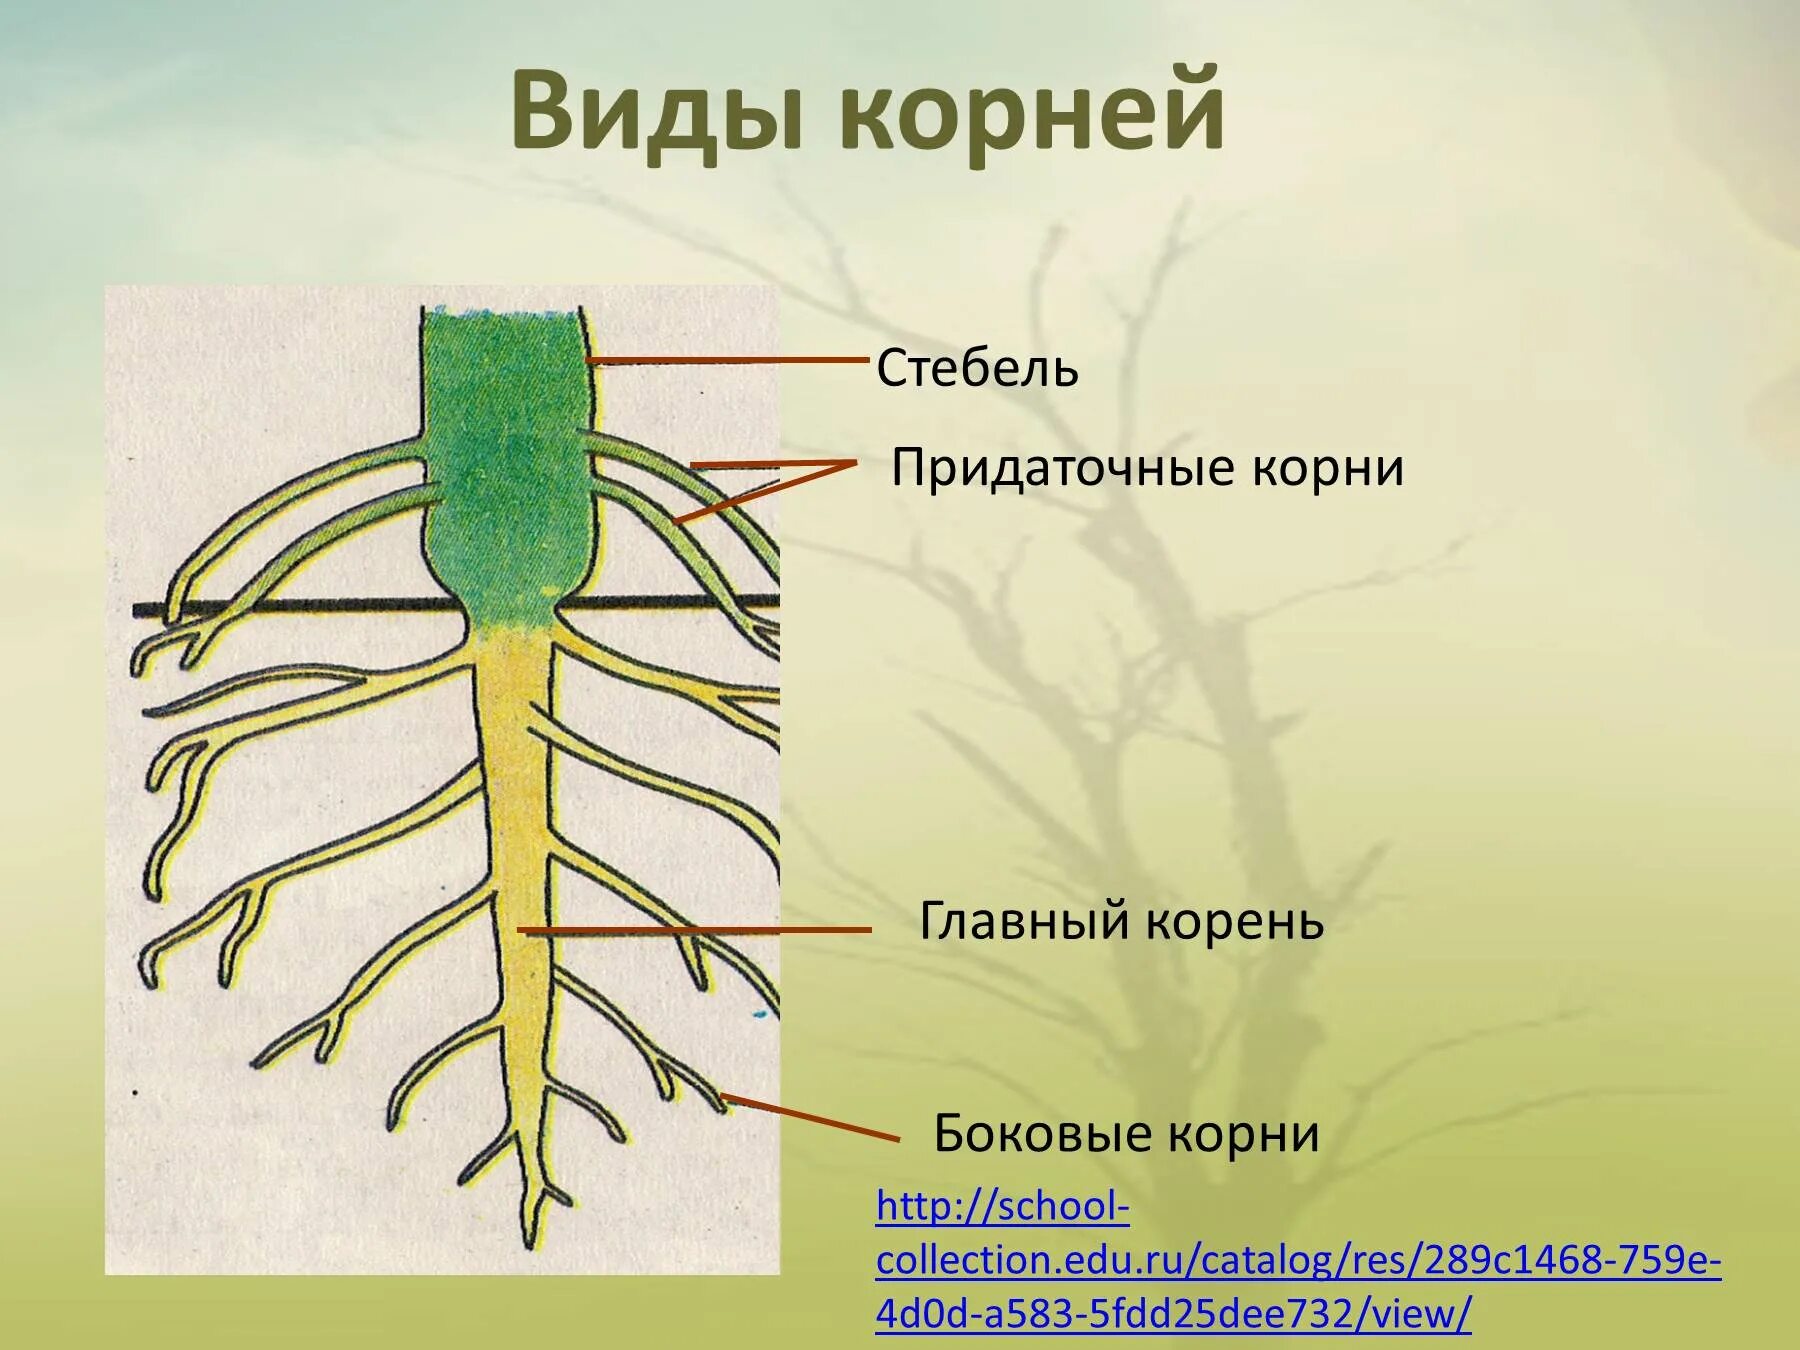 Придаточные корни на листе. Боковые корни. Строение главного корня. Боковые корни у растений.